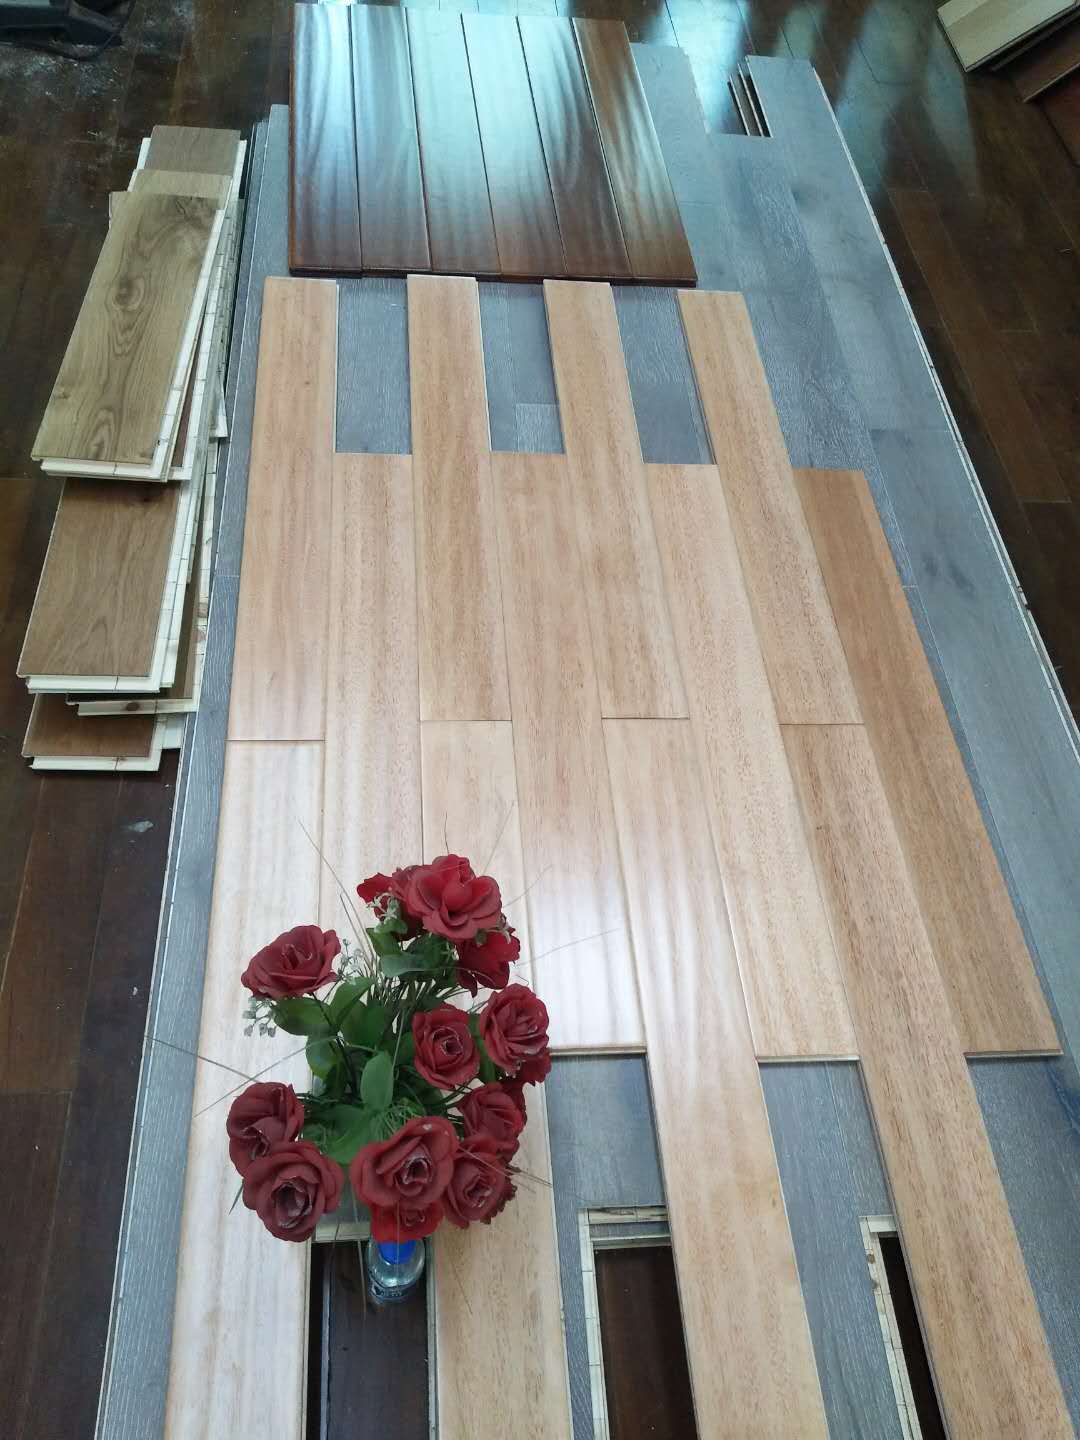 哪里的实木板好  多层木板批发价格  实地板批发  地板厂家 实木地板批发价格